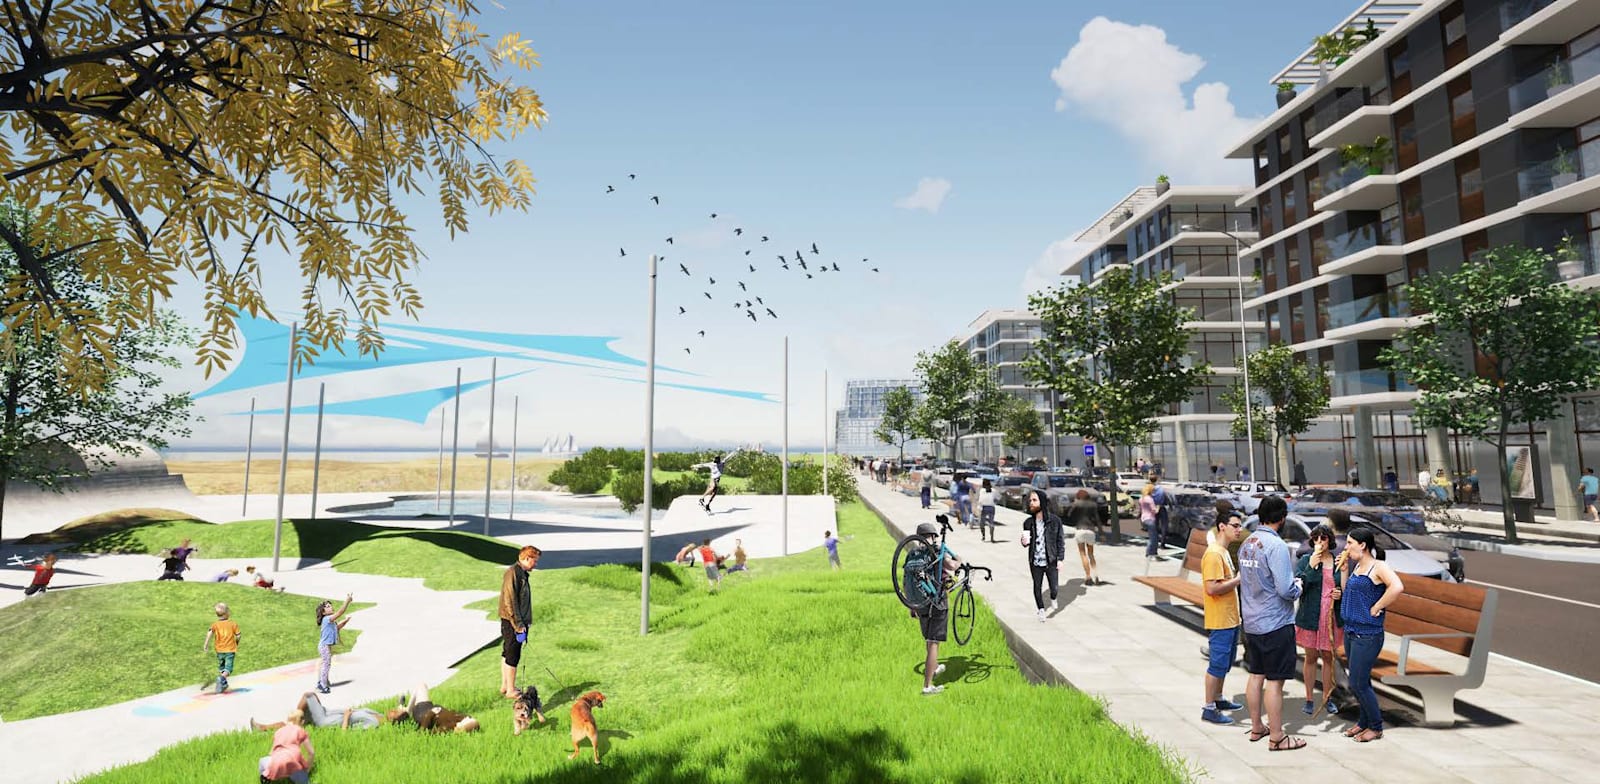 הדמייה תוכנית חוף התכלת - רובע עירוני חדש בהרצליה / הדמיה: קייזר אדריכלים ומתכננים